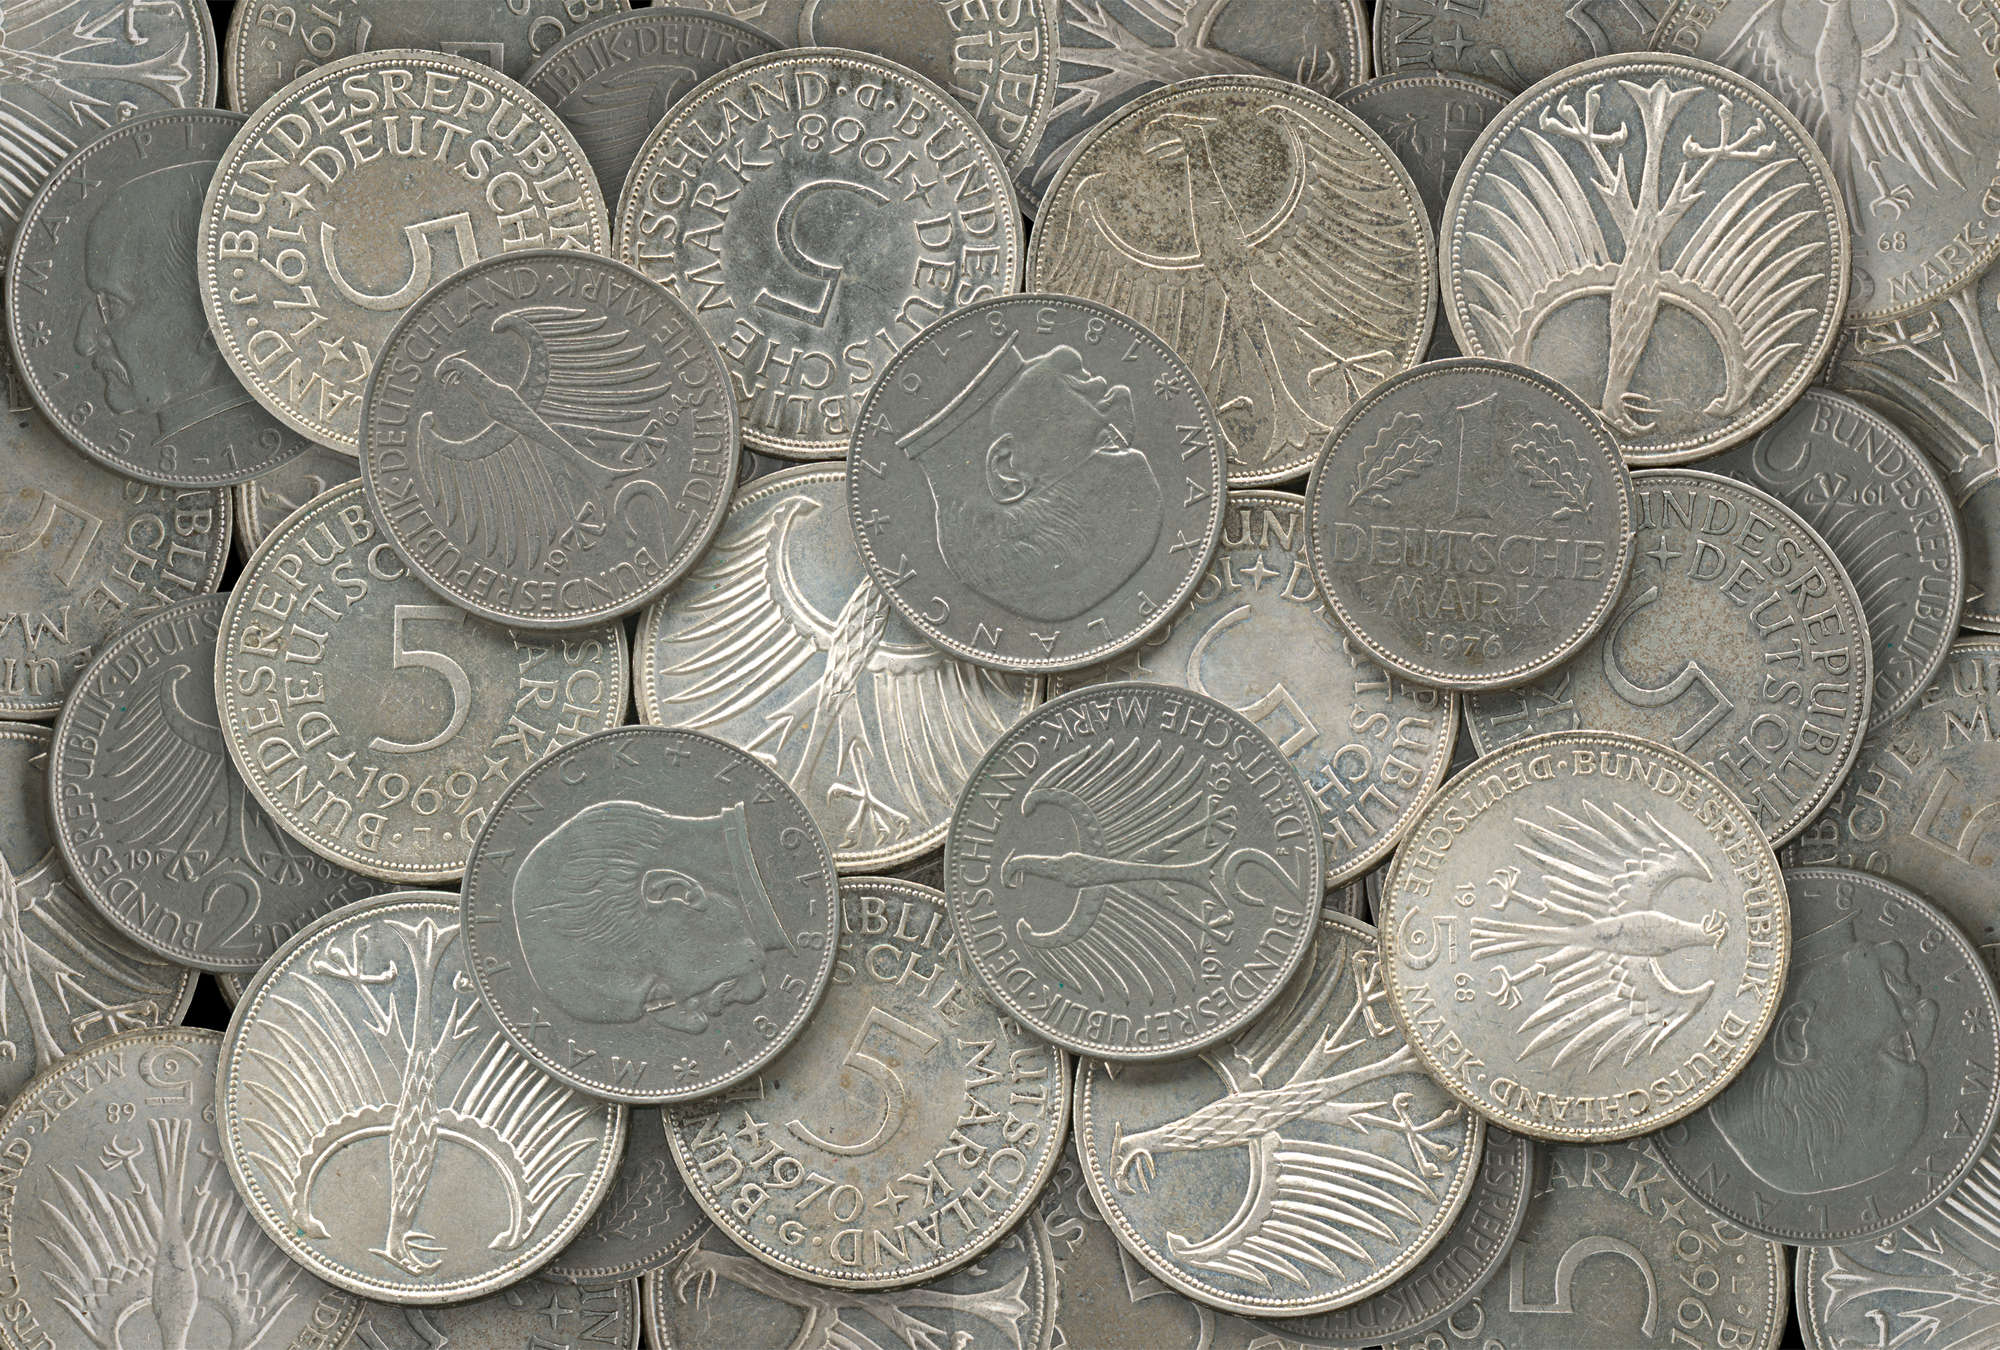             Mural de monedas de plata en detalle con efecto 3D
        